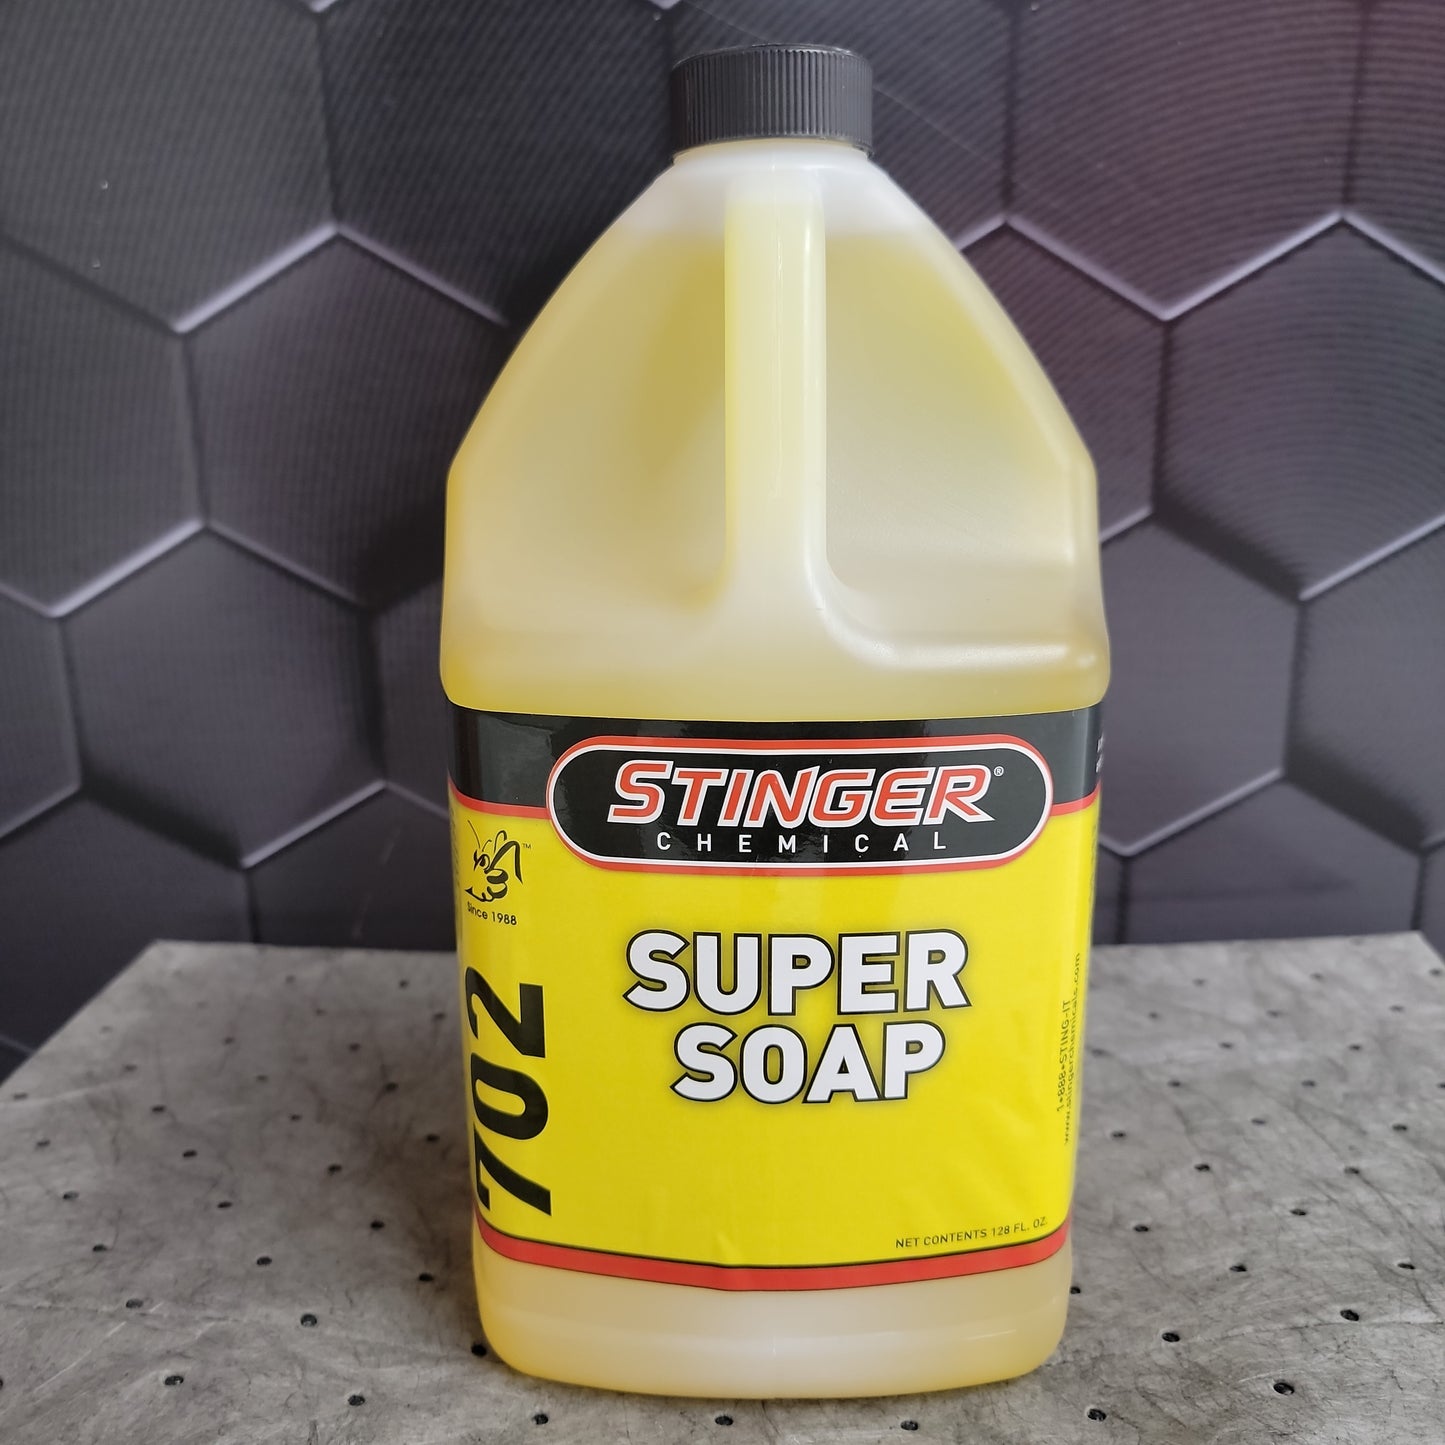 702 SUPER SOAP